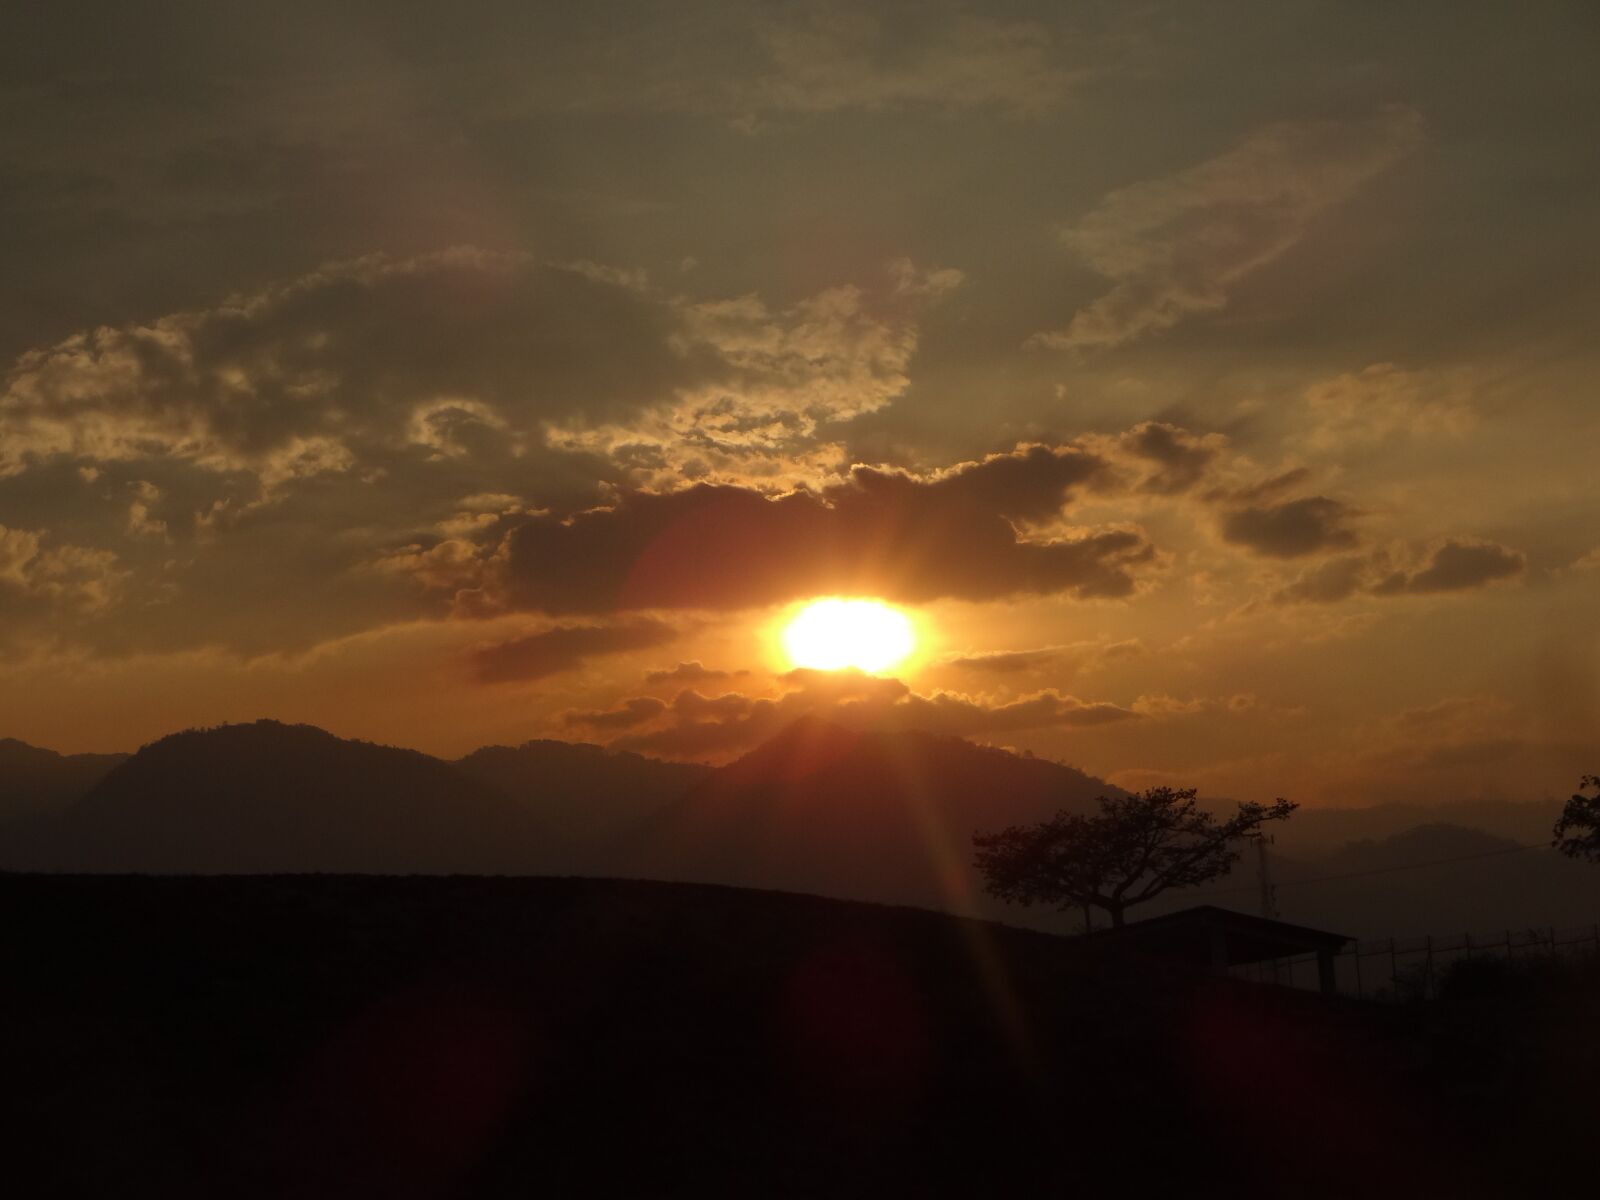 Sony DSC-WX100 sample photo. Sunset, sun, dawn photography